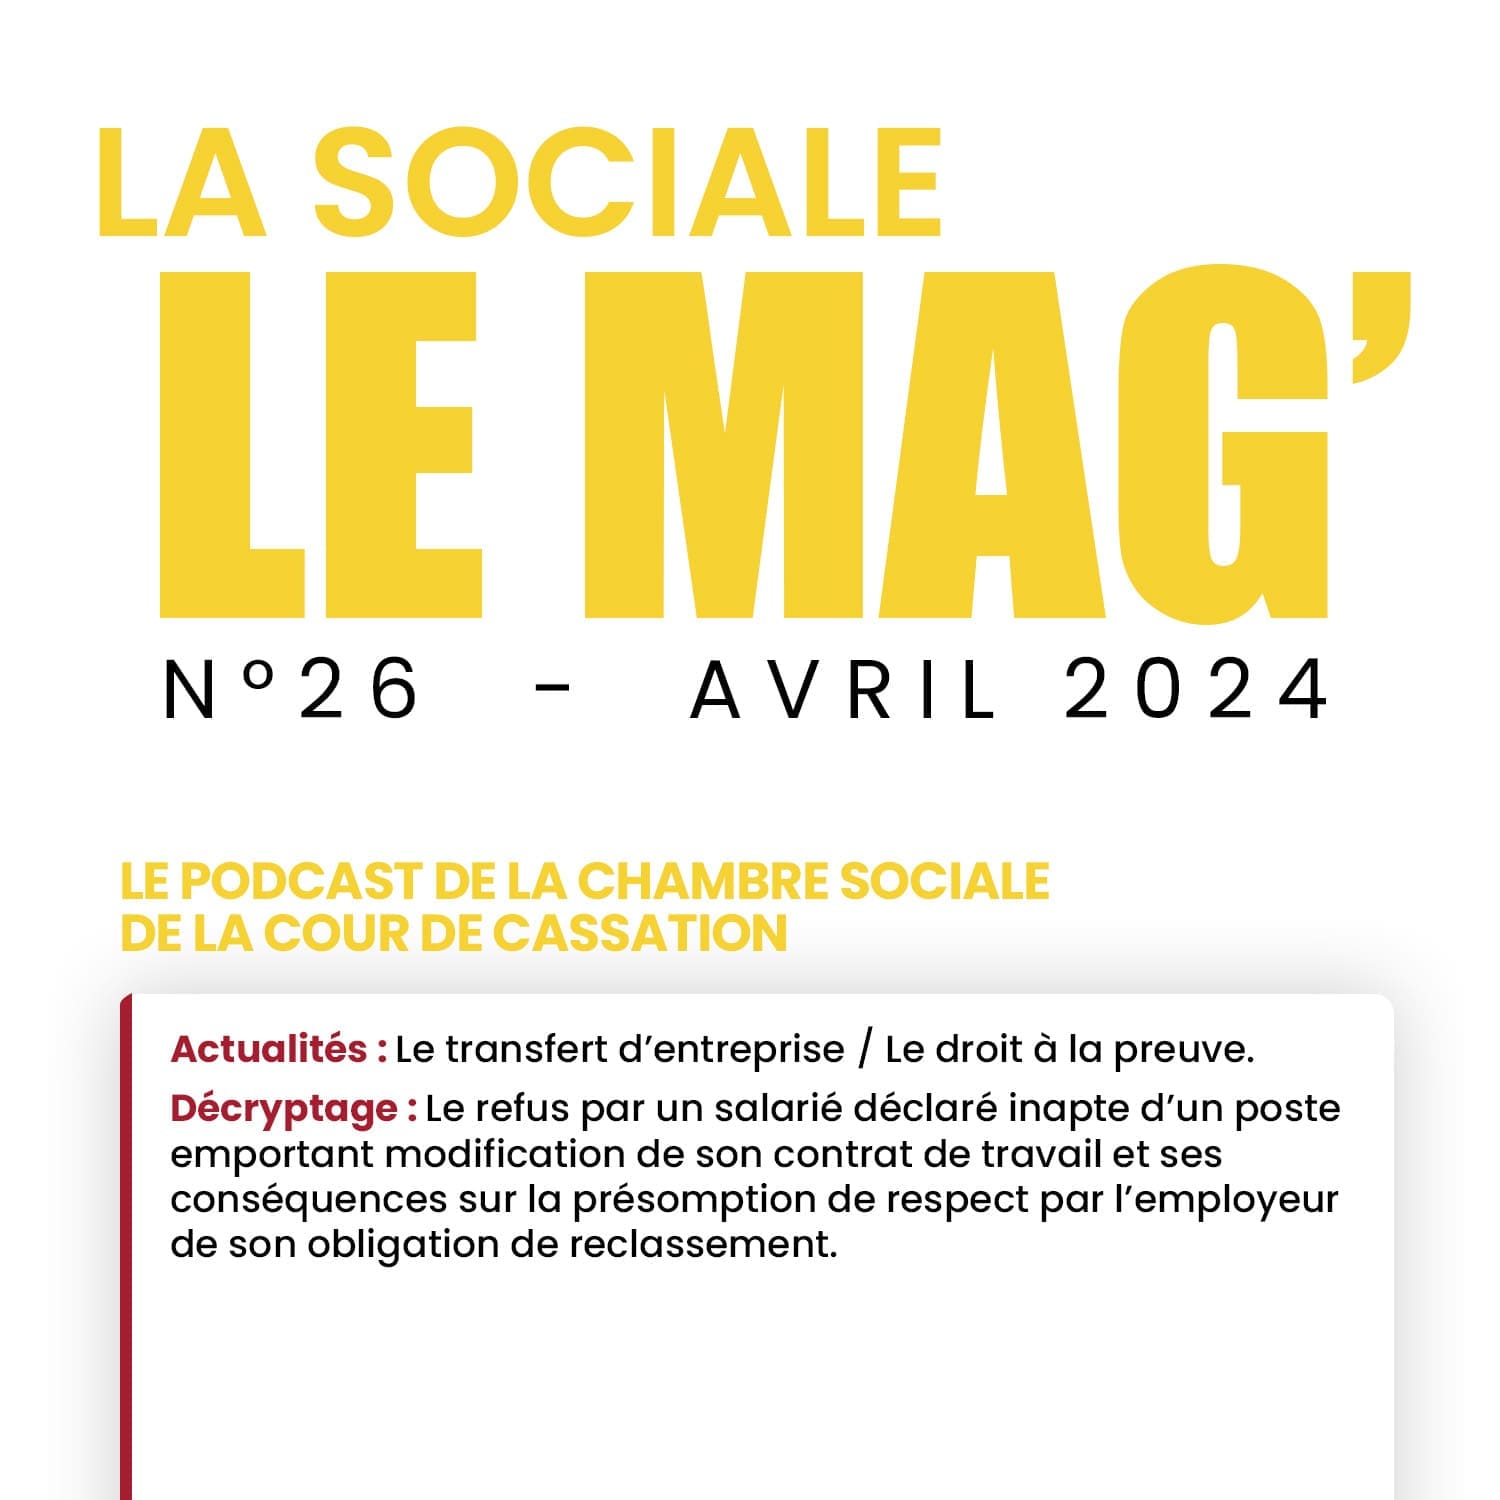 La Sociale Le Mag’ | Le podcast de la chambre sociale de la Cour de cassation #26